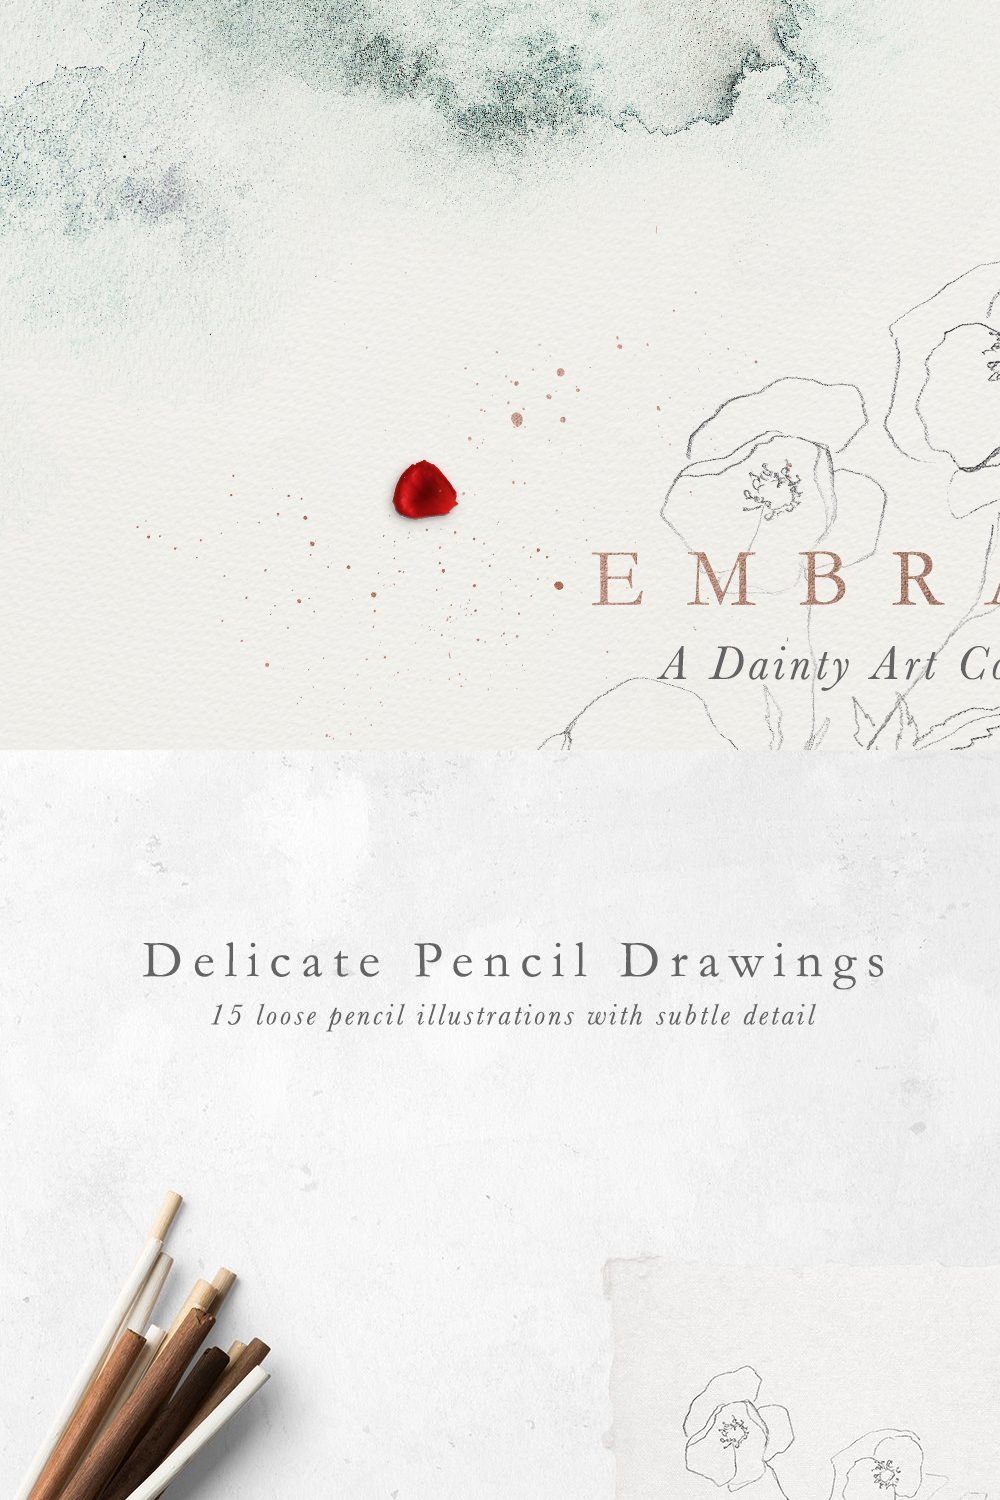 Embrace - Pencil Florals & Textures pinterest preview image.